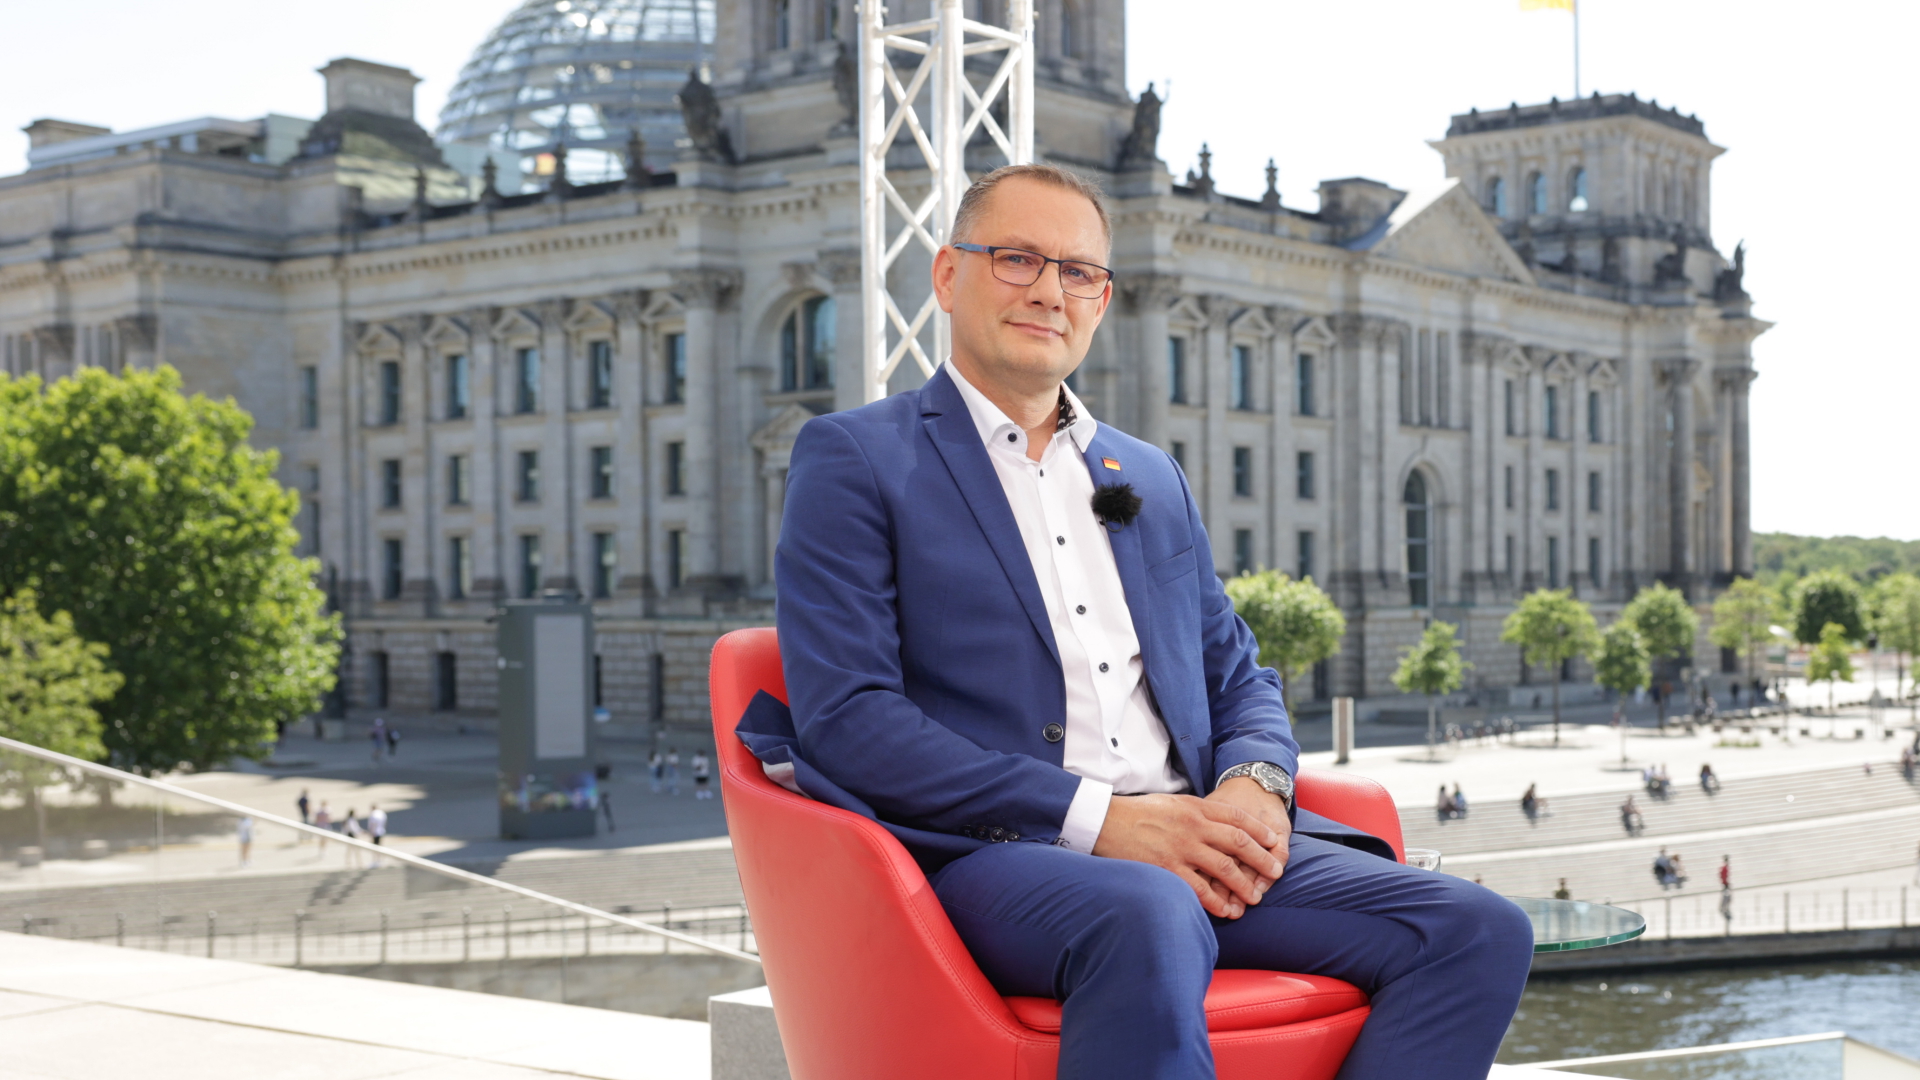 Chrupalla im ARD-Sommerinterview: "Es geht um deutsche Interessen